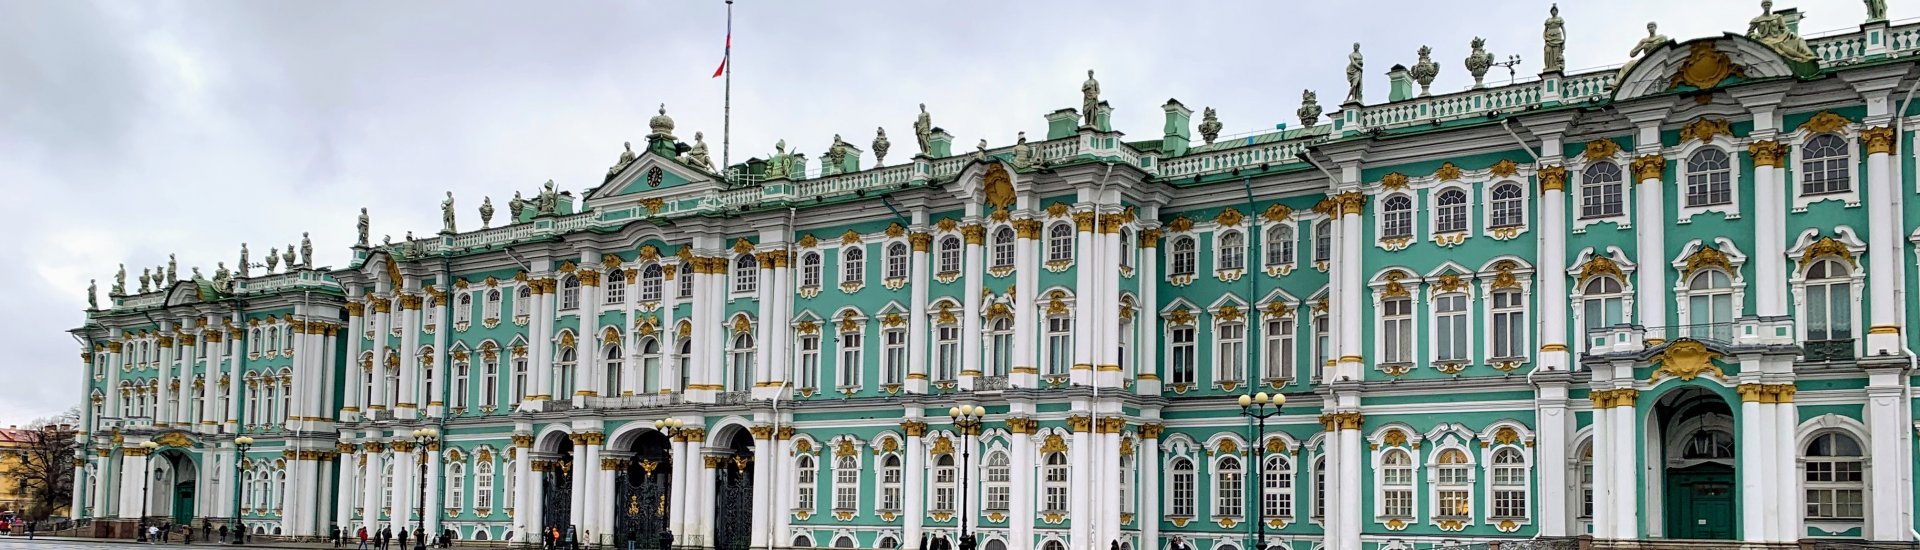 De Hermitage in St. Petersburg, Rusland